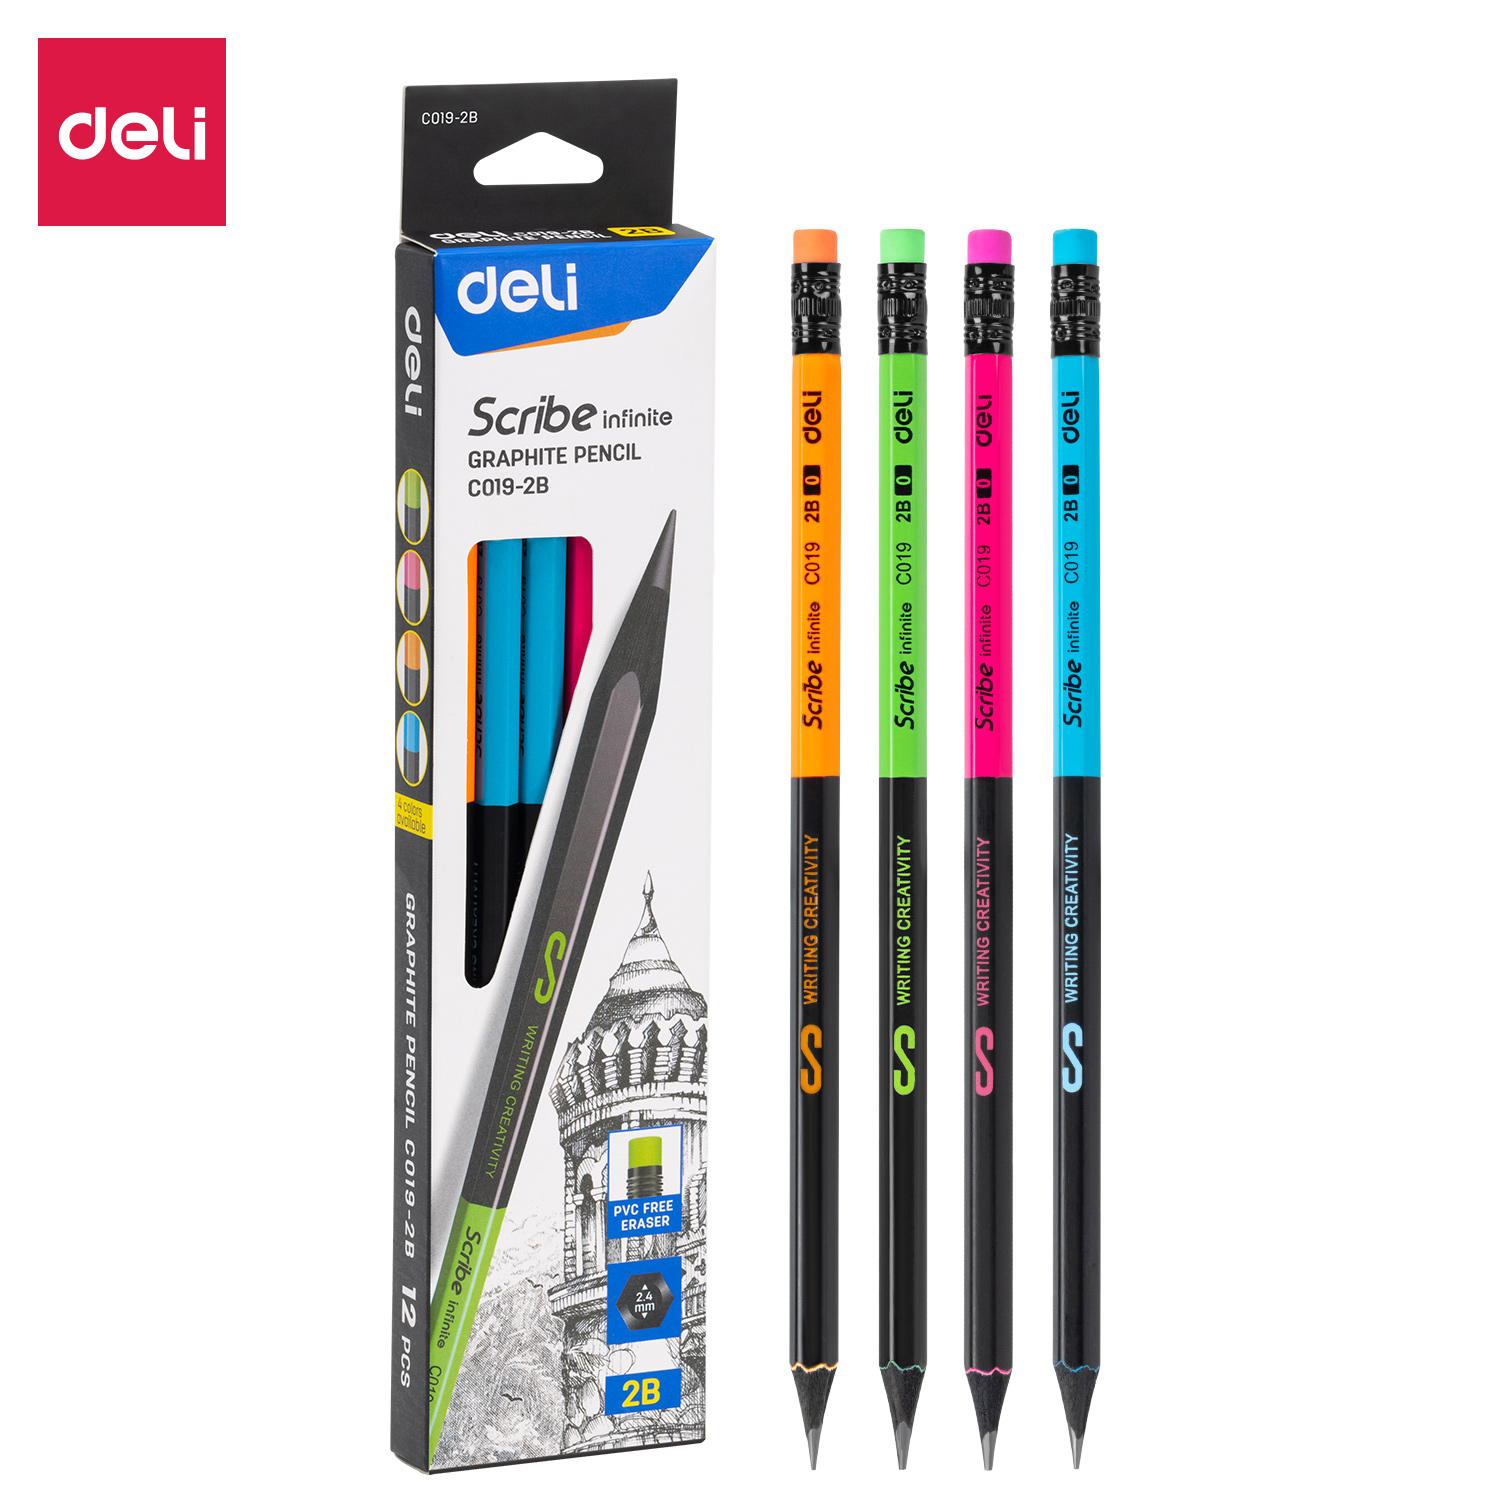 Deli-EC019-2B Graphite pencil